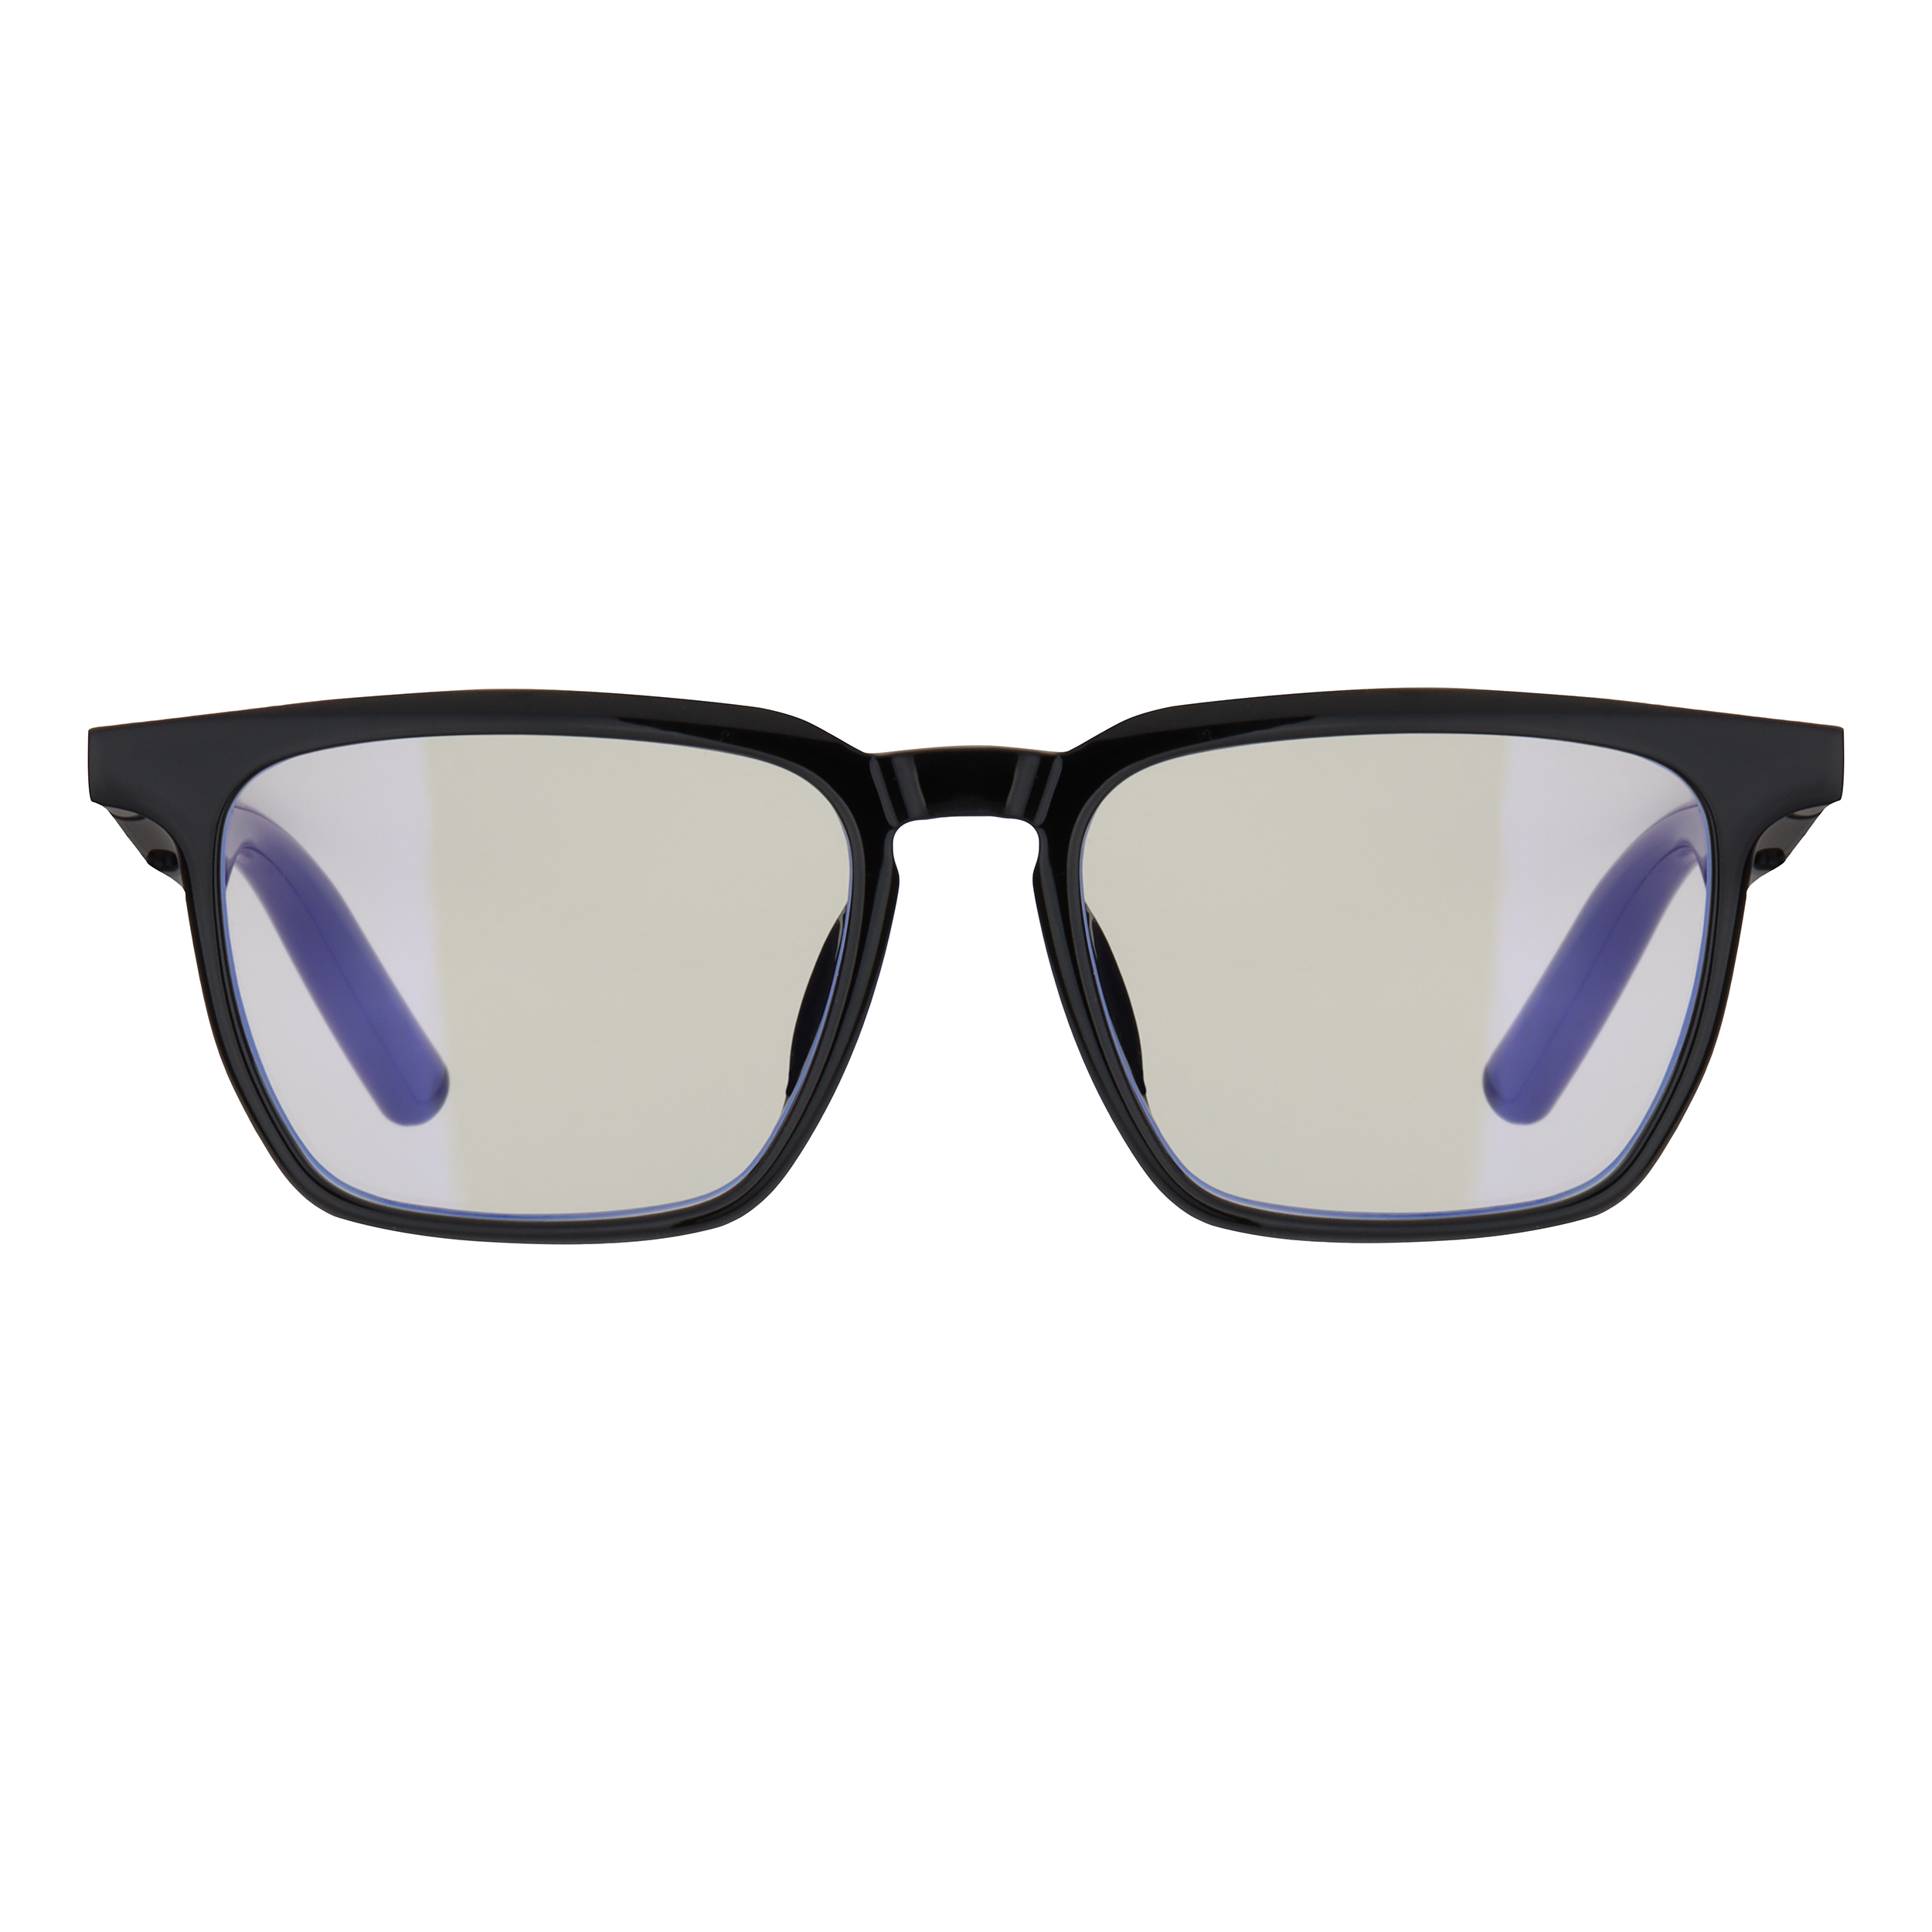 نکته خرید - قیمت روز عینک هوشمند مدل G01-09 خرید